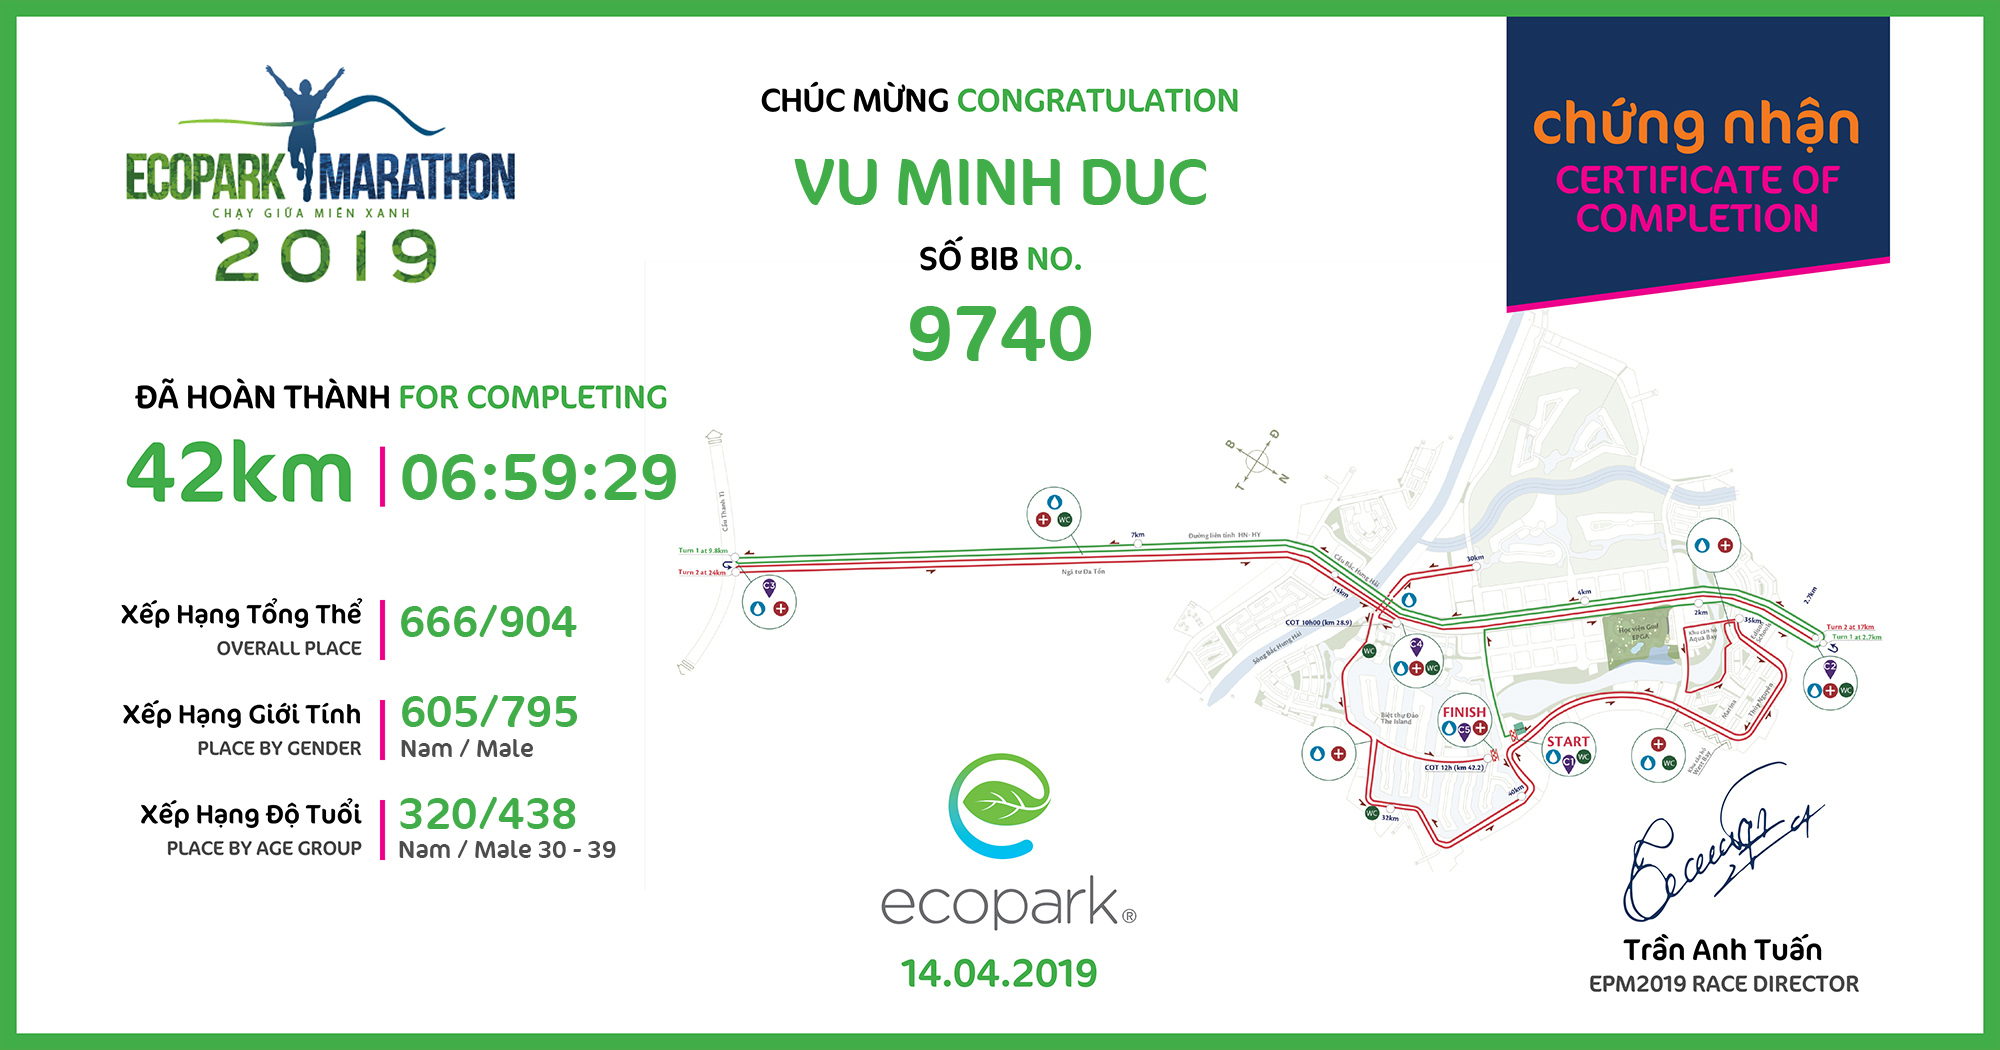 9740 - Vu Minh Duc